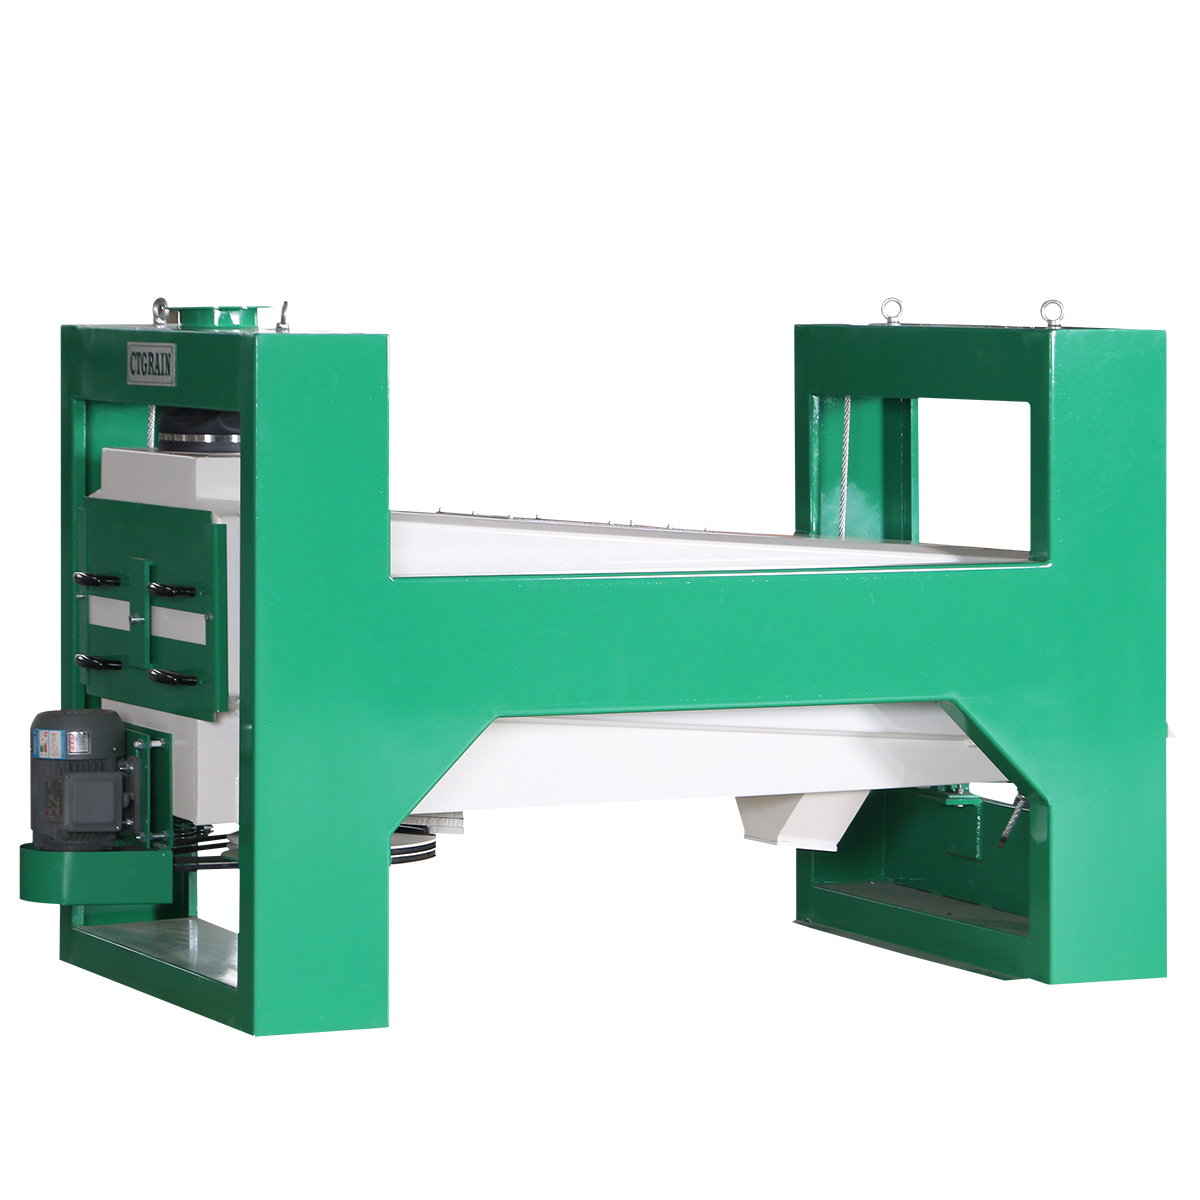 Factory directly supply Rotary Aspirator – Grain Cleaning Machine Rotary Aspirator – Chinatown